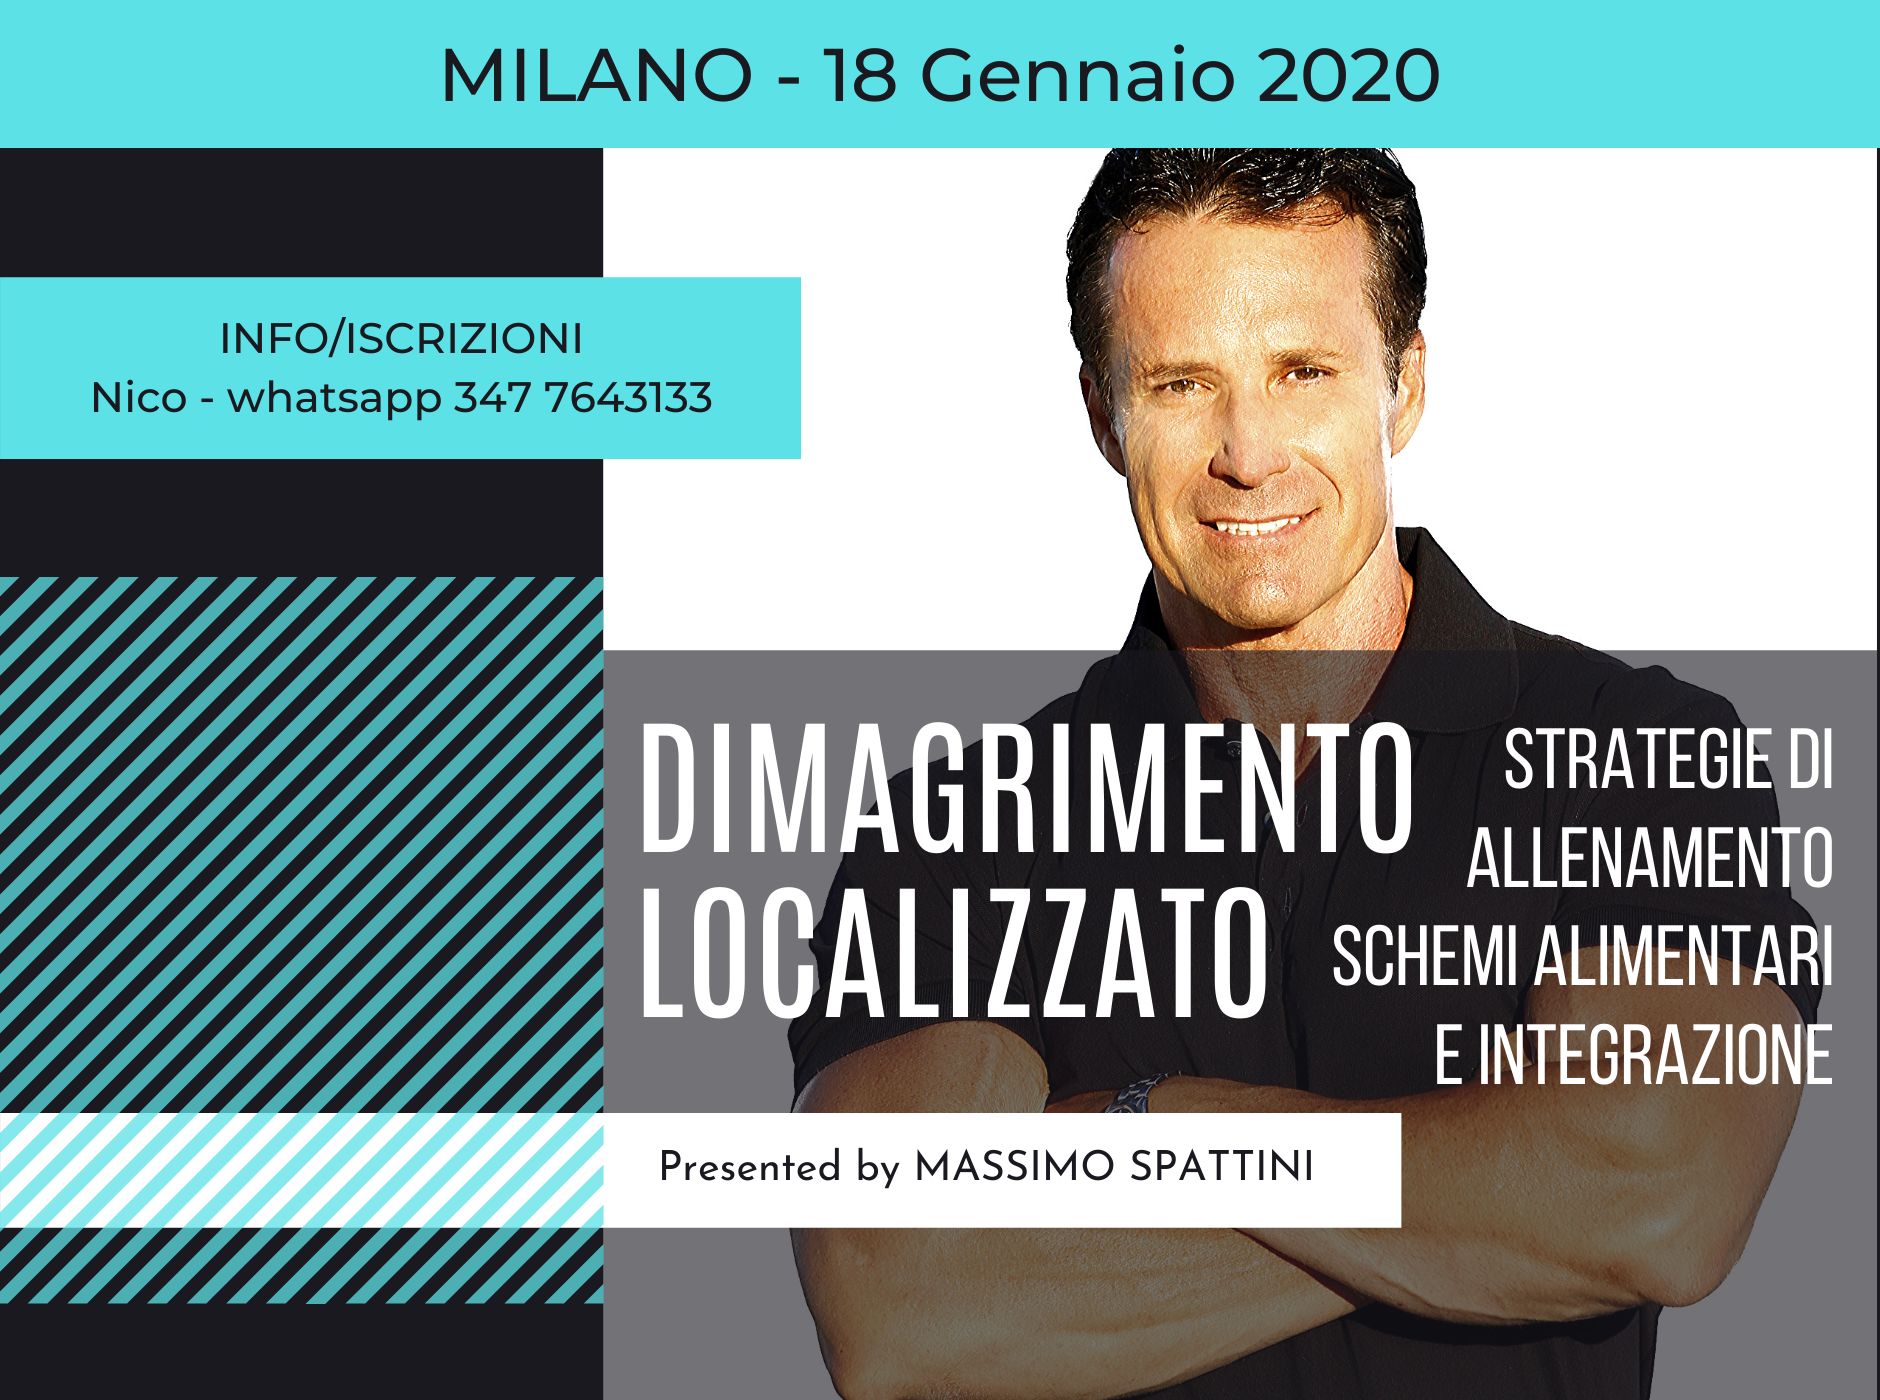 DIMAGRIMENTO LOCALIZZATO – Milano –  18 Gennaio 2020